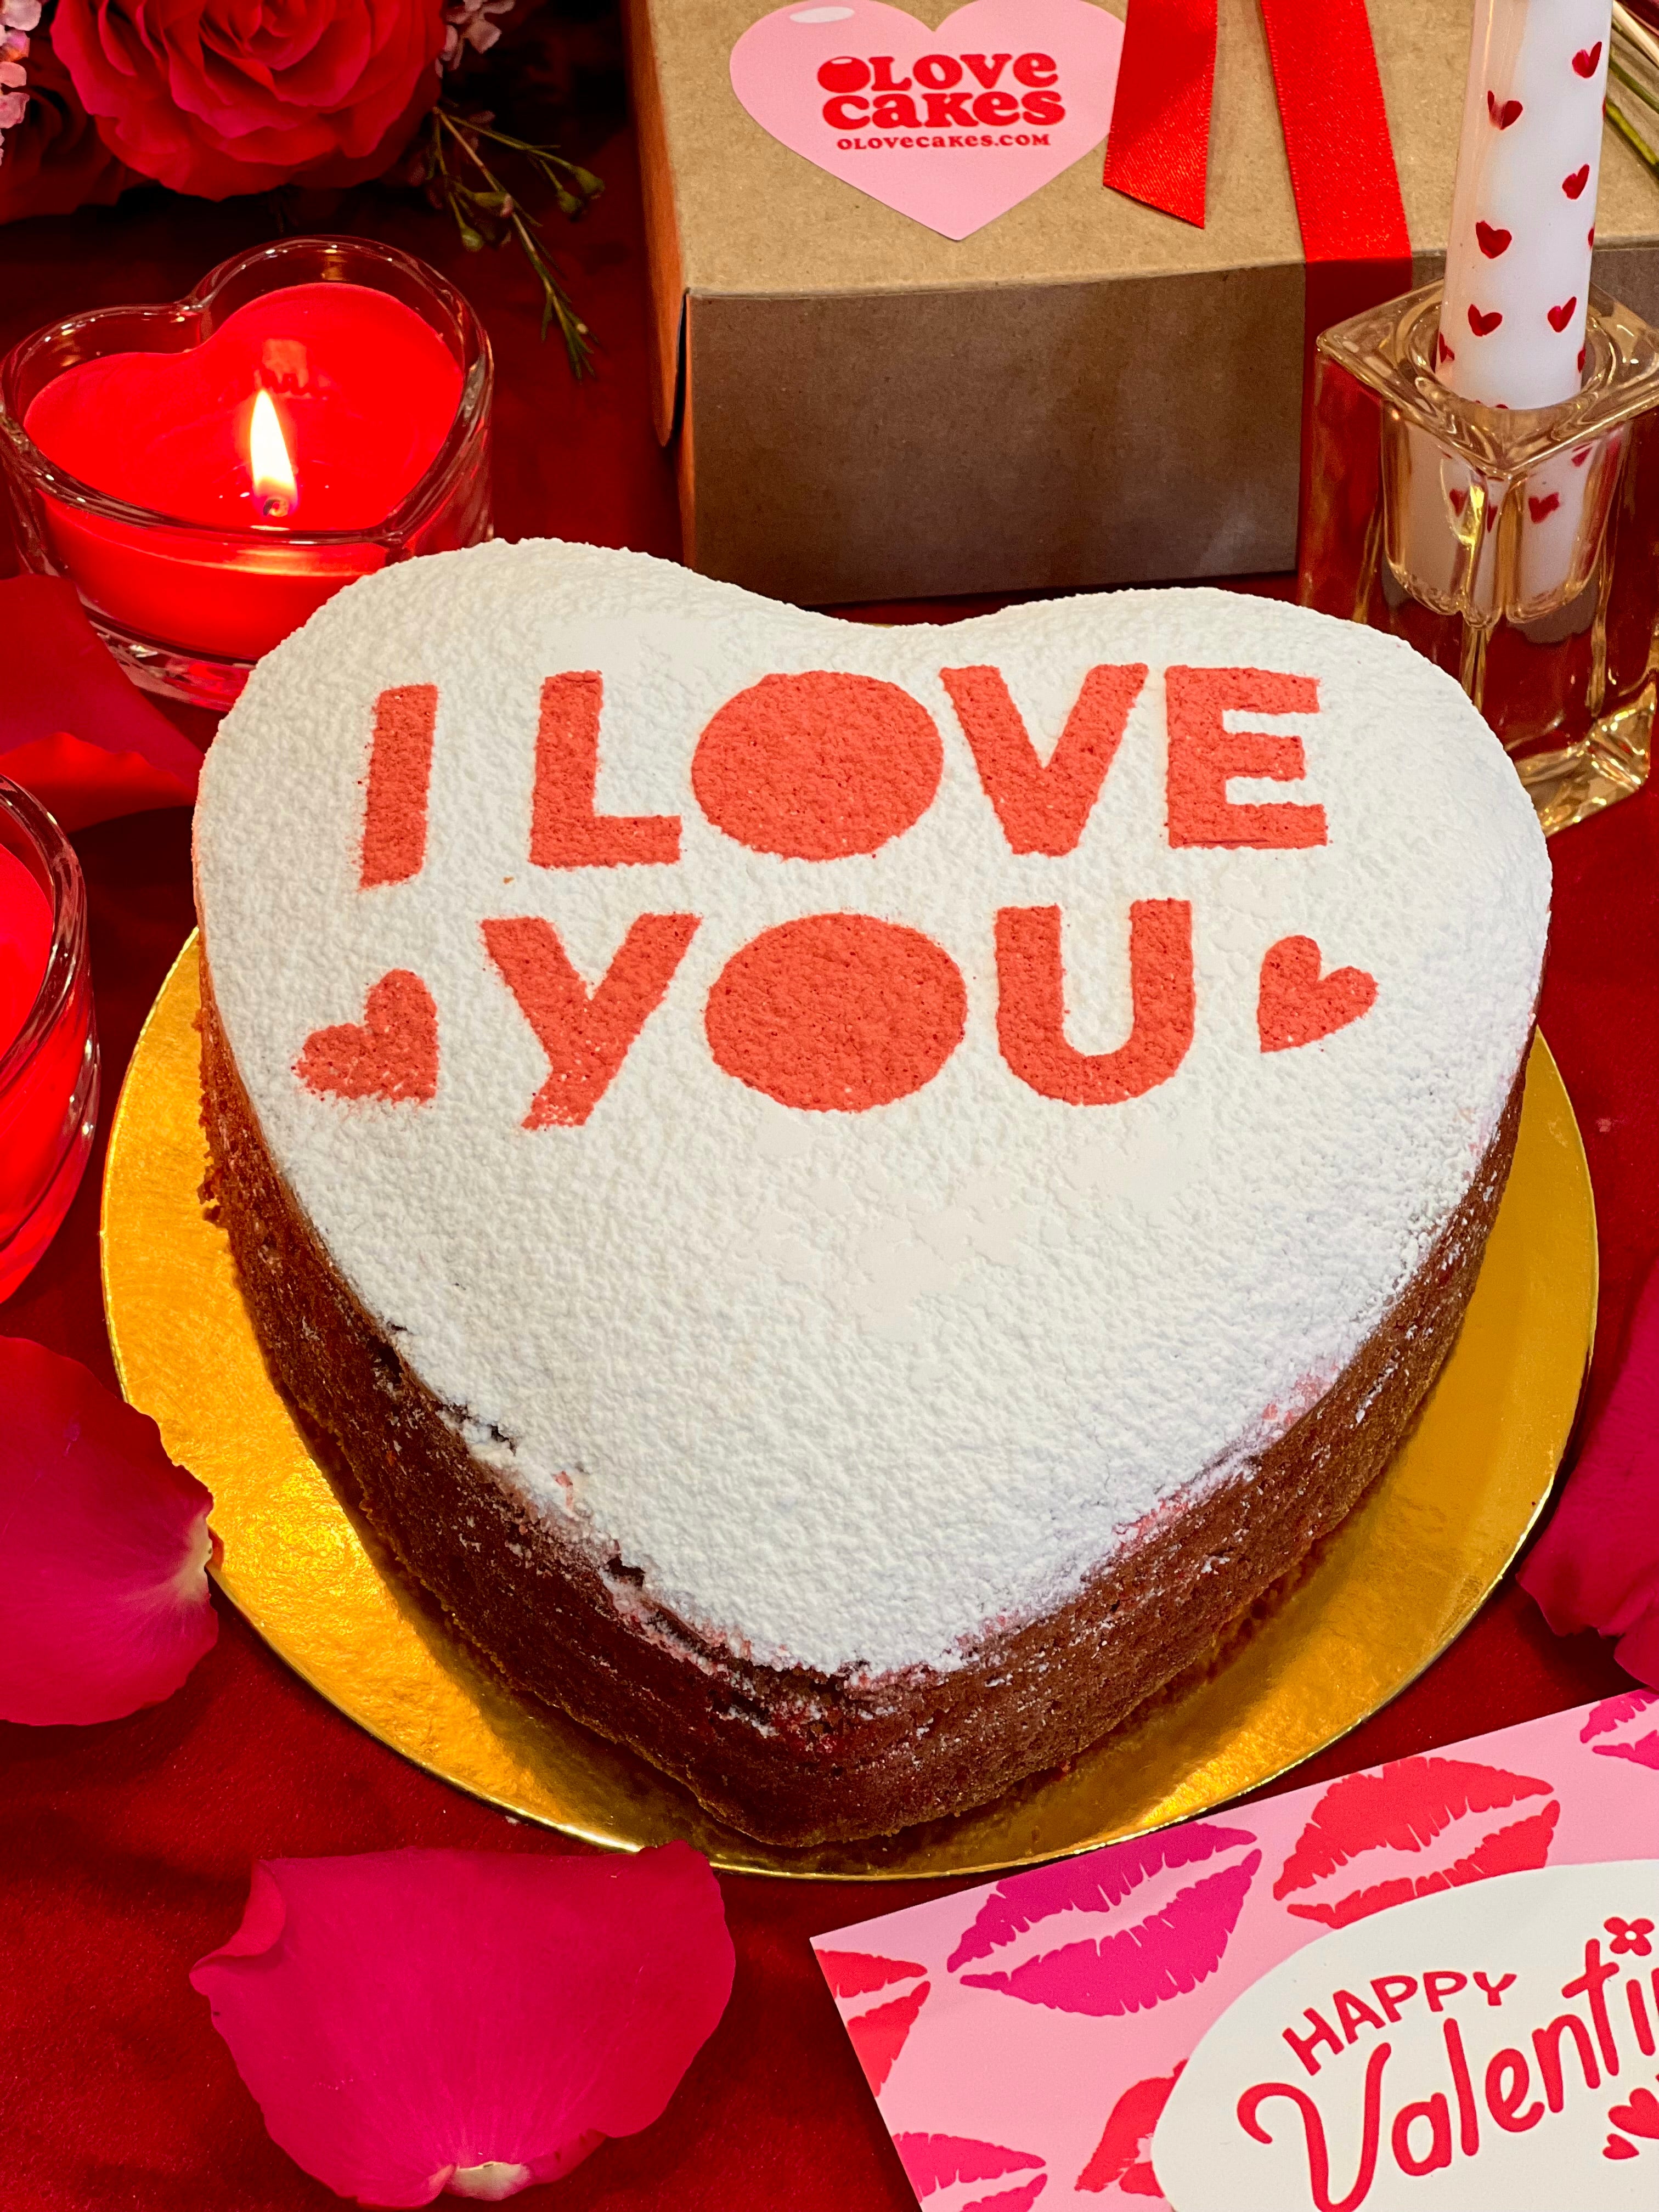 Heart Shaped Cake - I love you